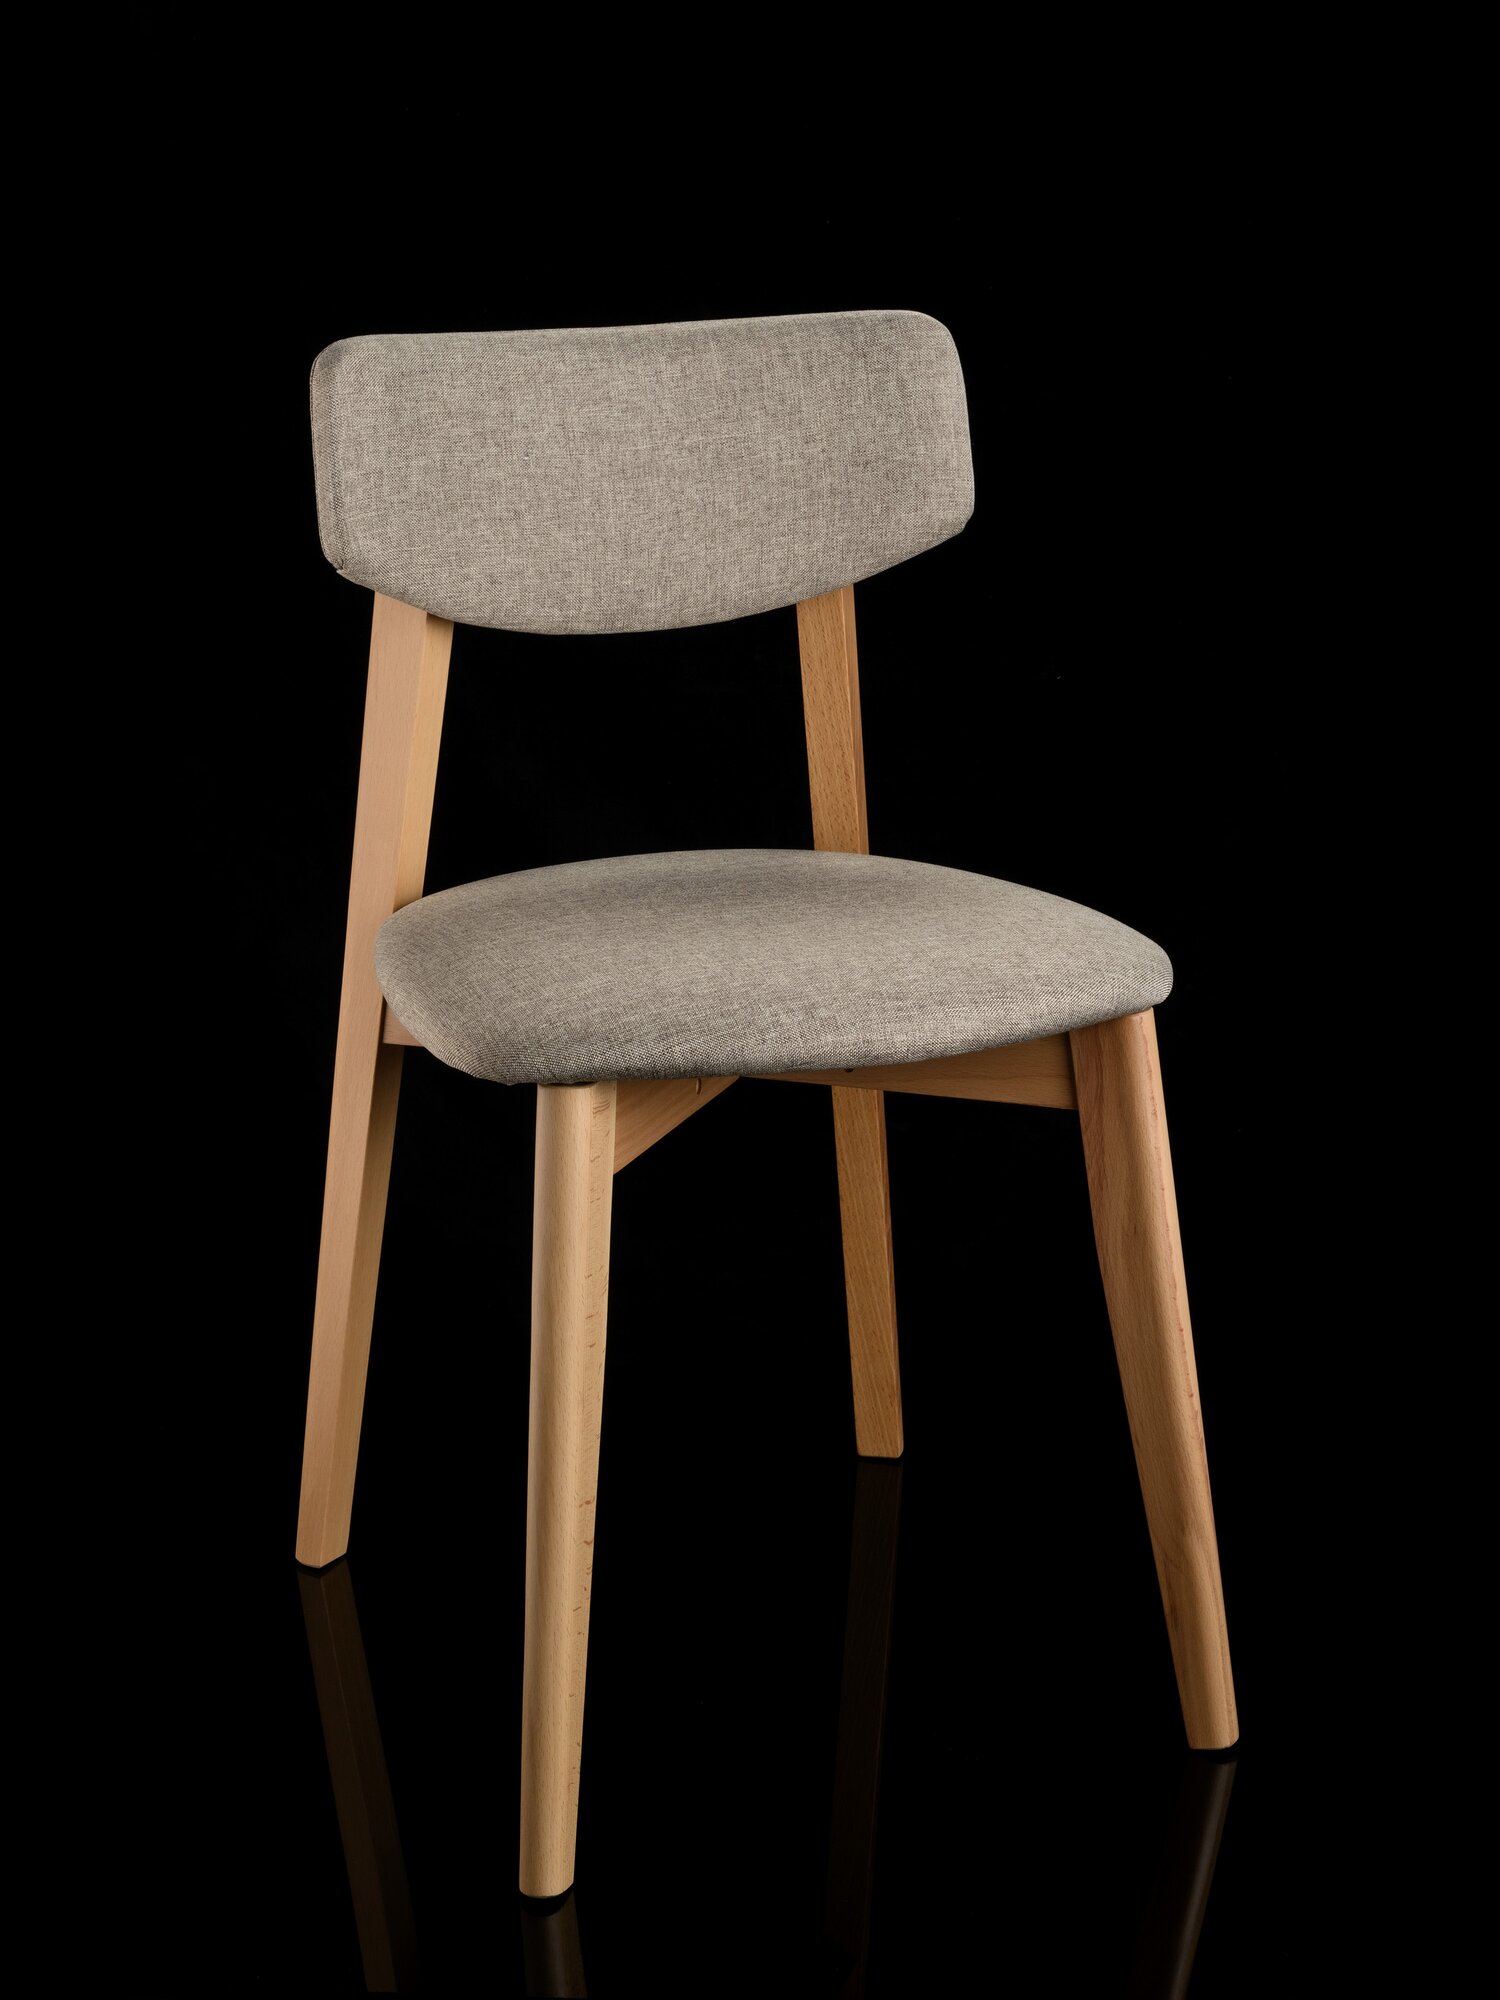 Мягкий кухонный стул со спинкой, деревянный ВС/145